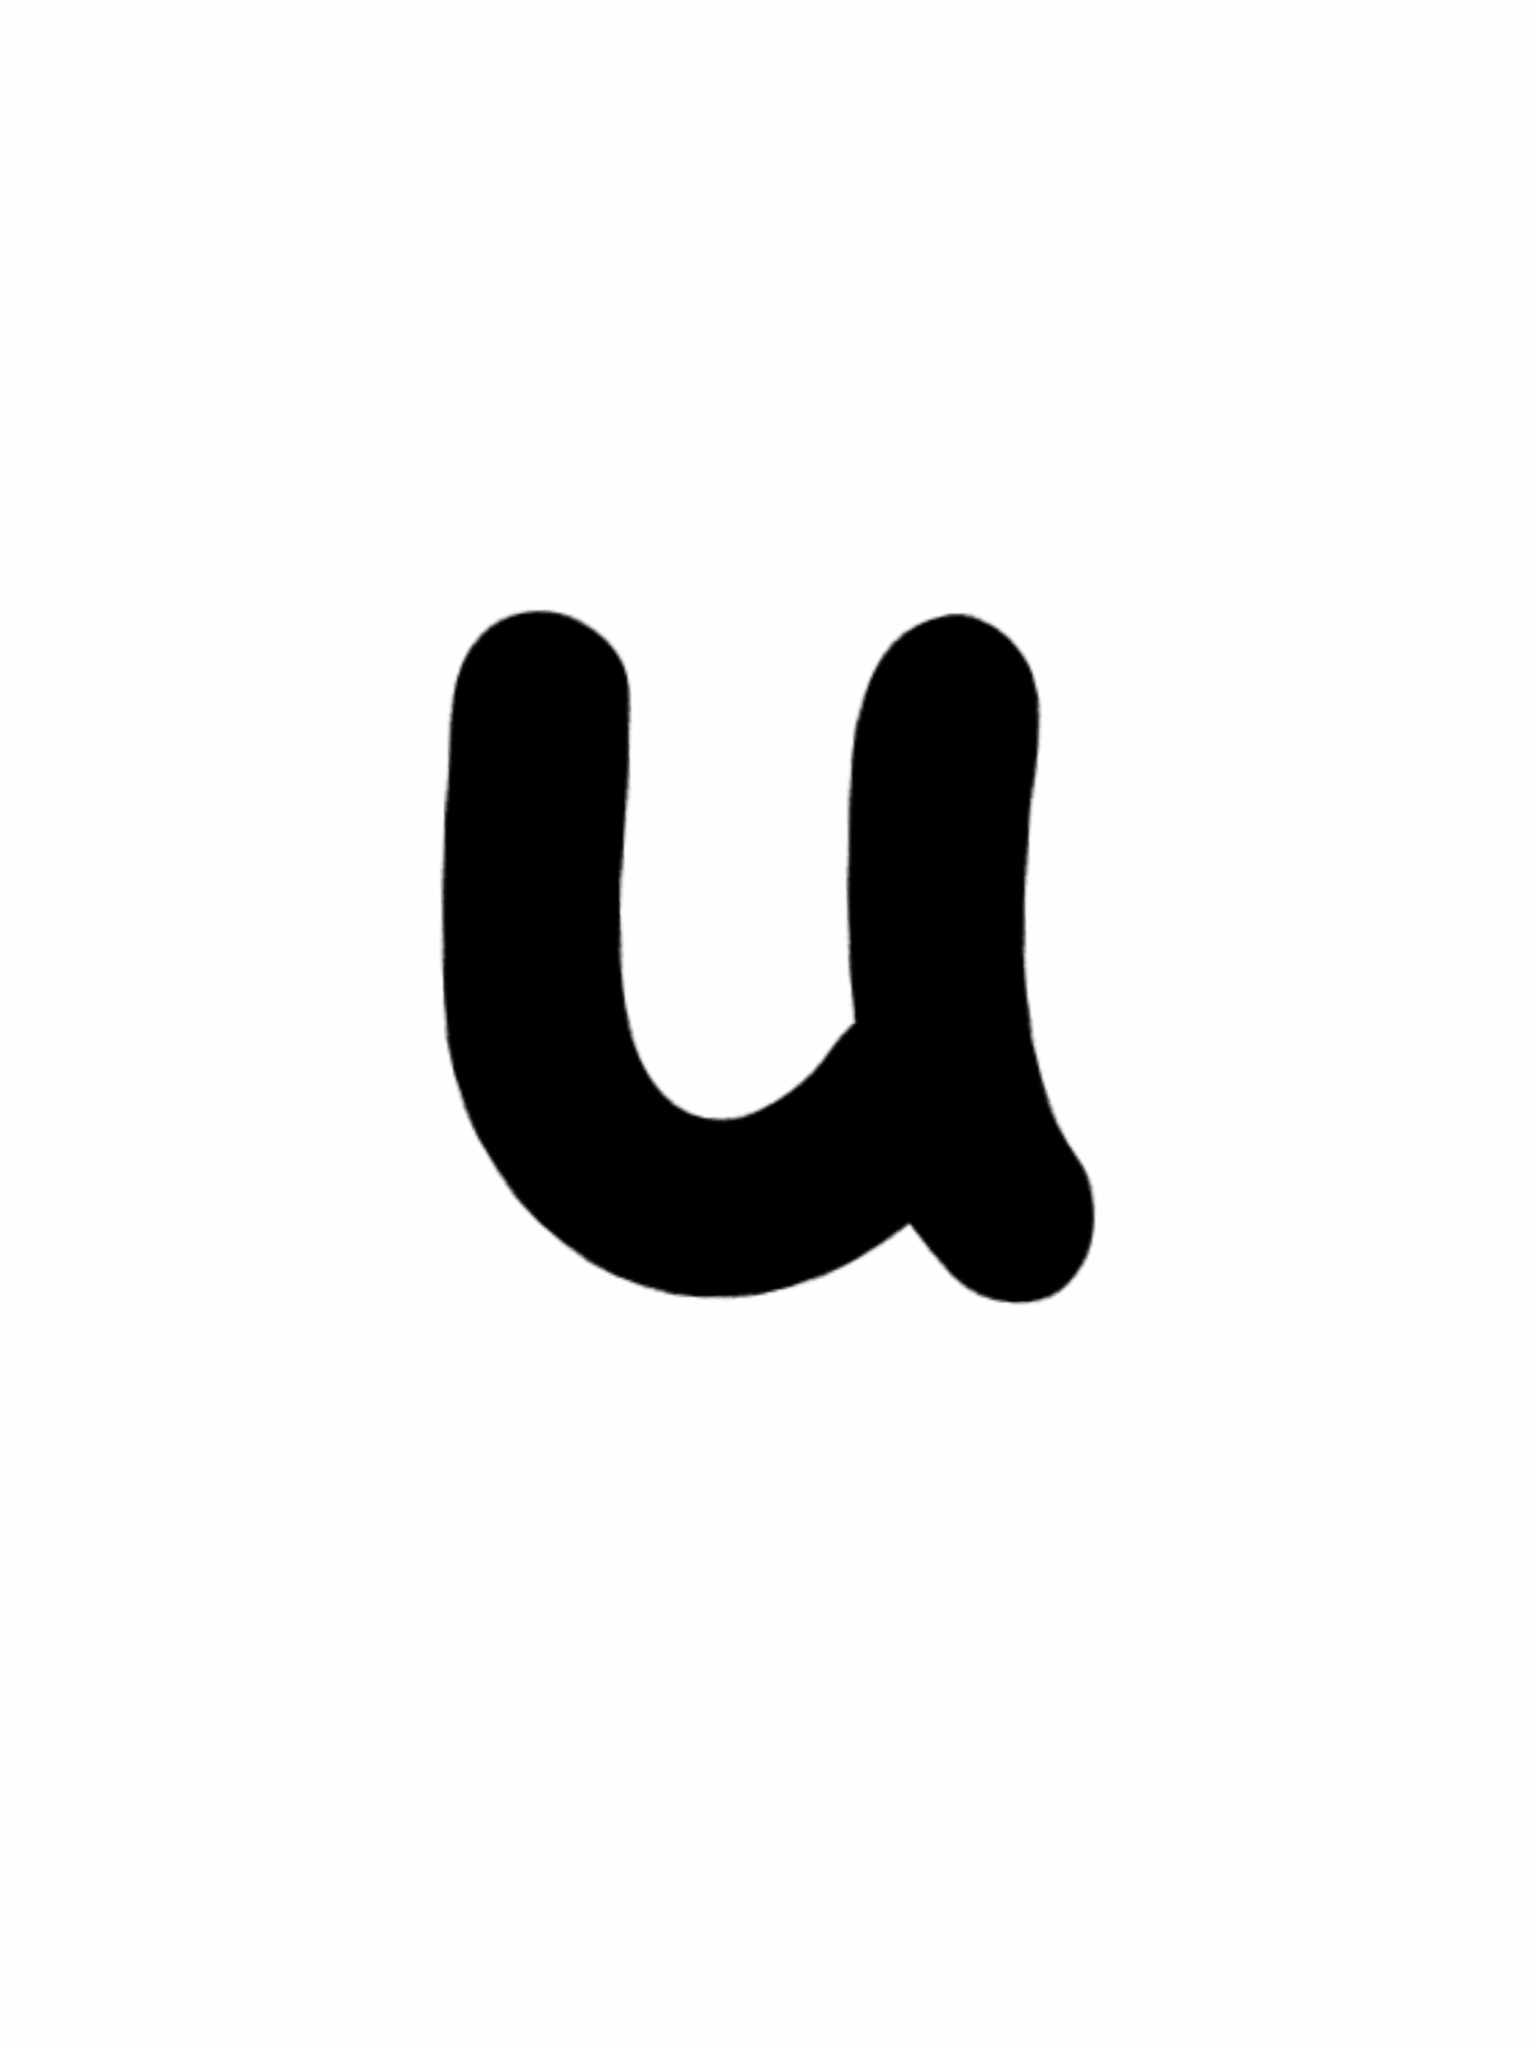 Alphabet Resources - letter 'U' — Dyslexic Logic